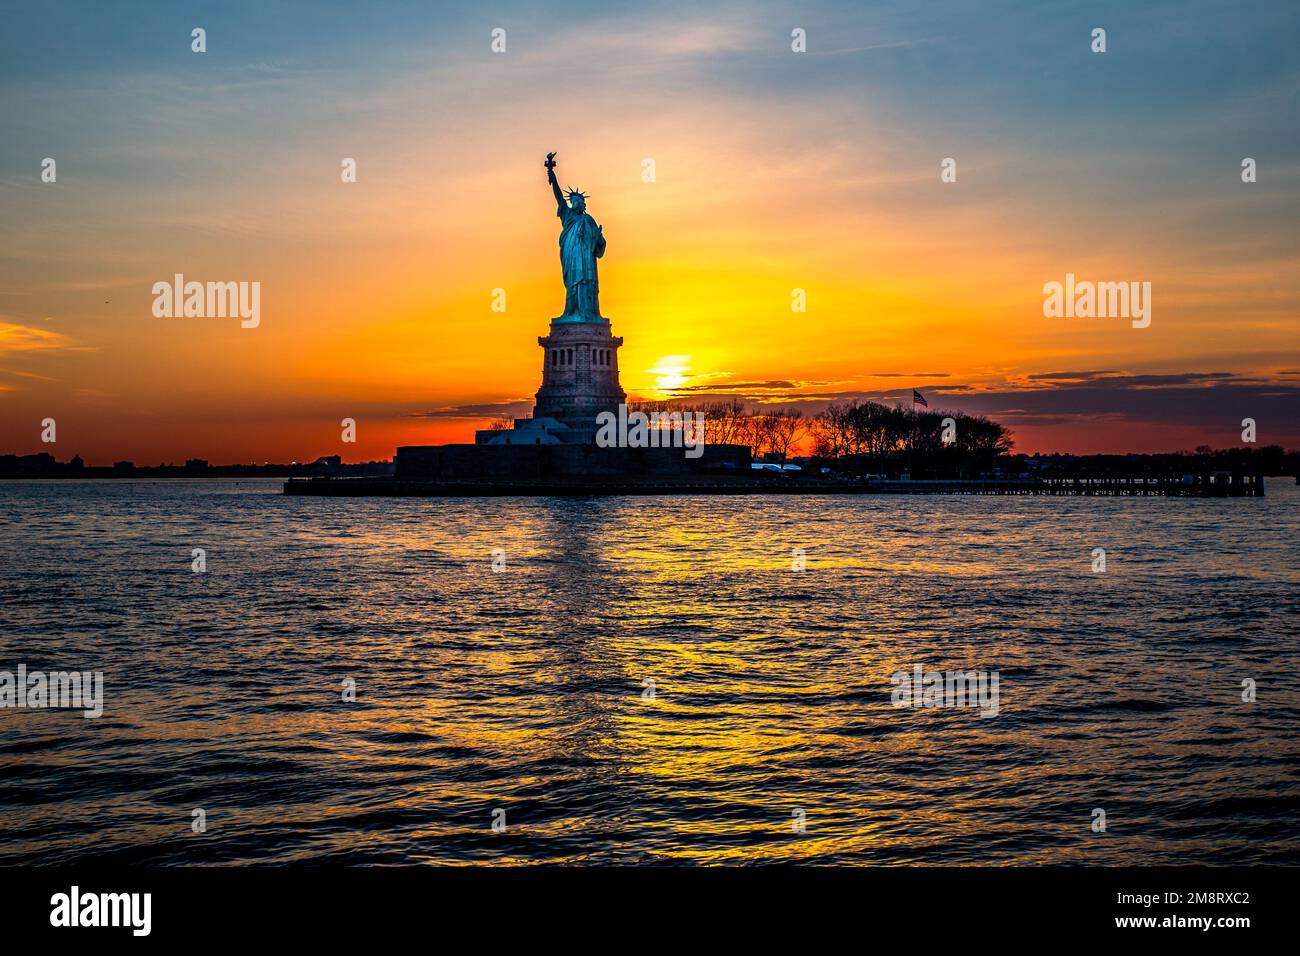 Freiheitsstatuetta bei Sonnenuntergang - Statua della libertà al tramonto Foto Stock